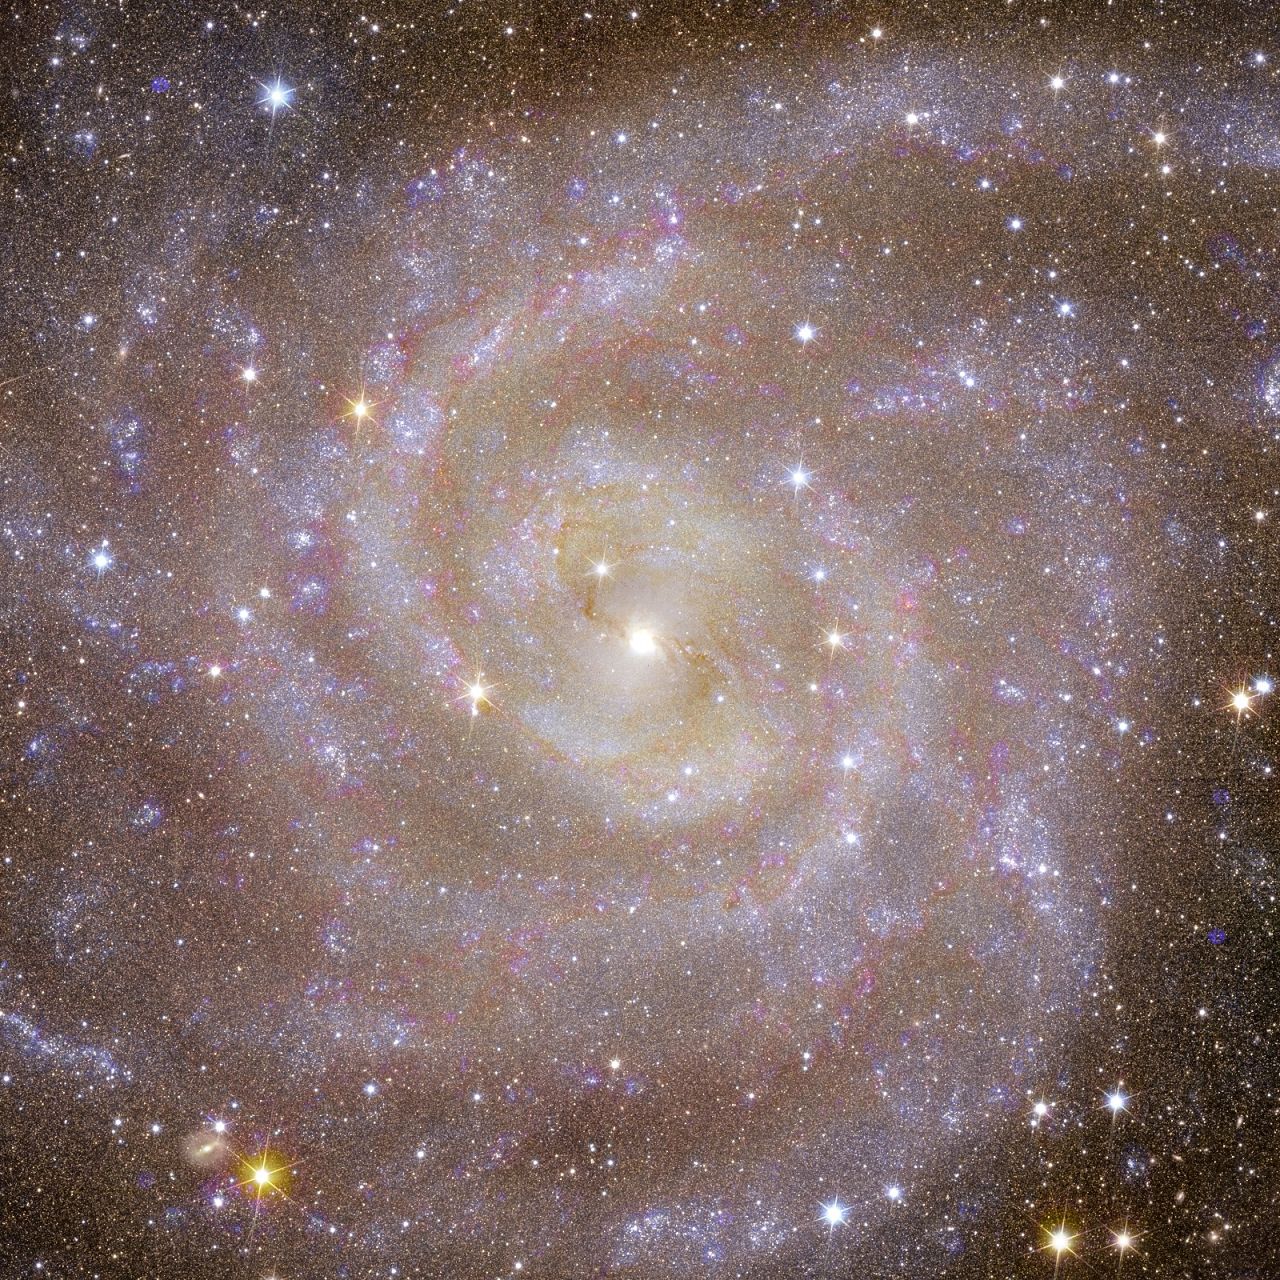 Vue d'Euclide de la galaxie spirale IC 342, connue sous le nom de "Galaxie cachée," qui est similaire à la Voie Lactée.